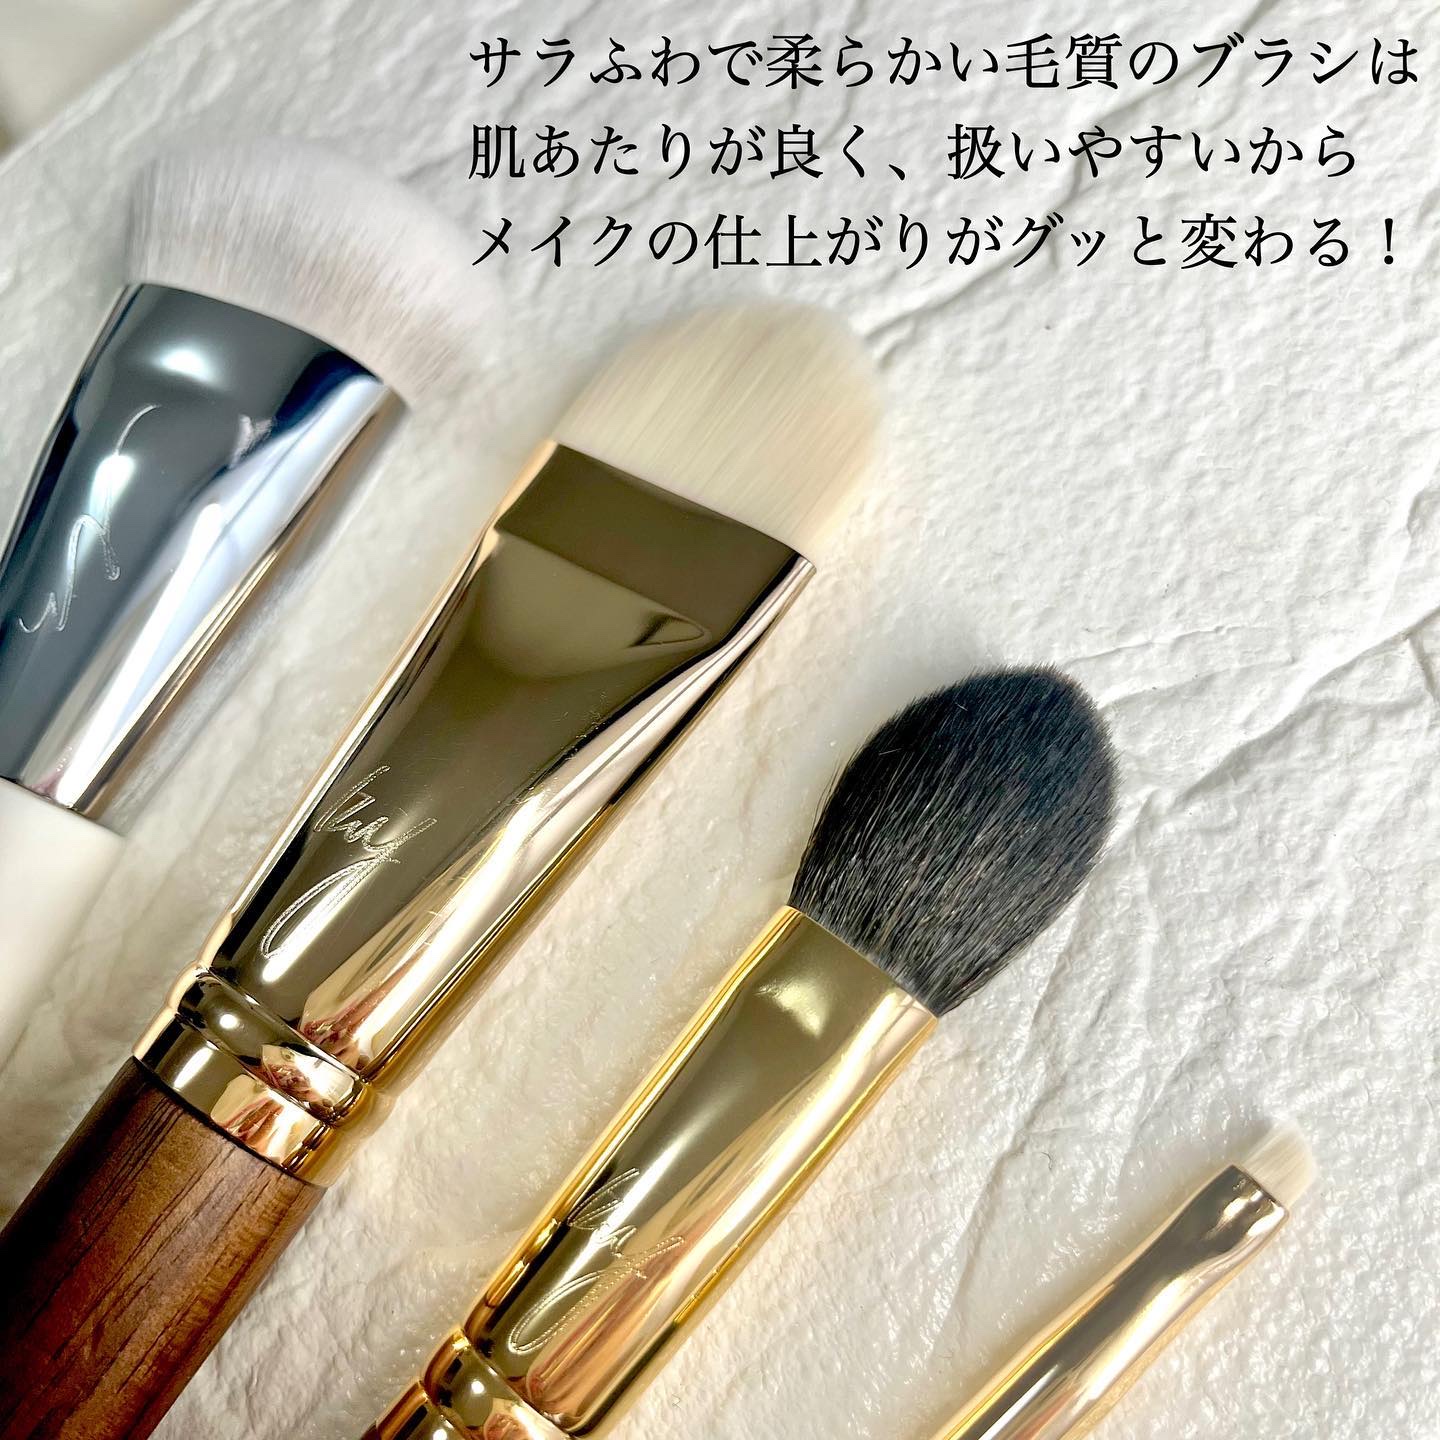 【販売特注】HAKUHODO 限定 キラキラ ゴールド ブラシ セット 新品 未使用 コフレ/メイクアップセット